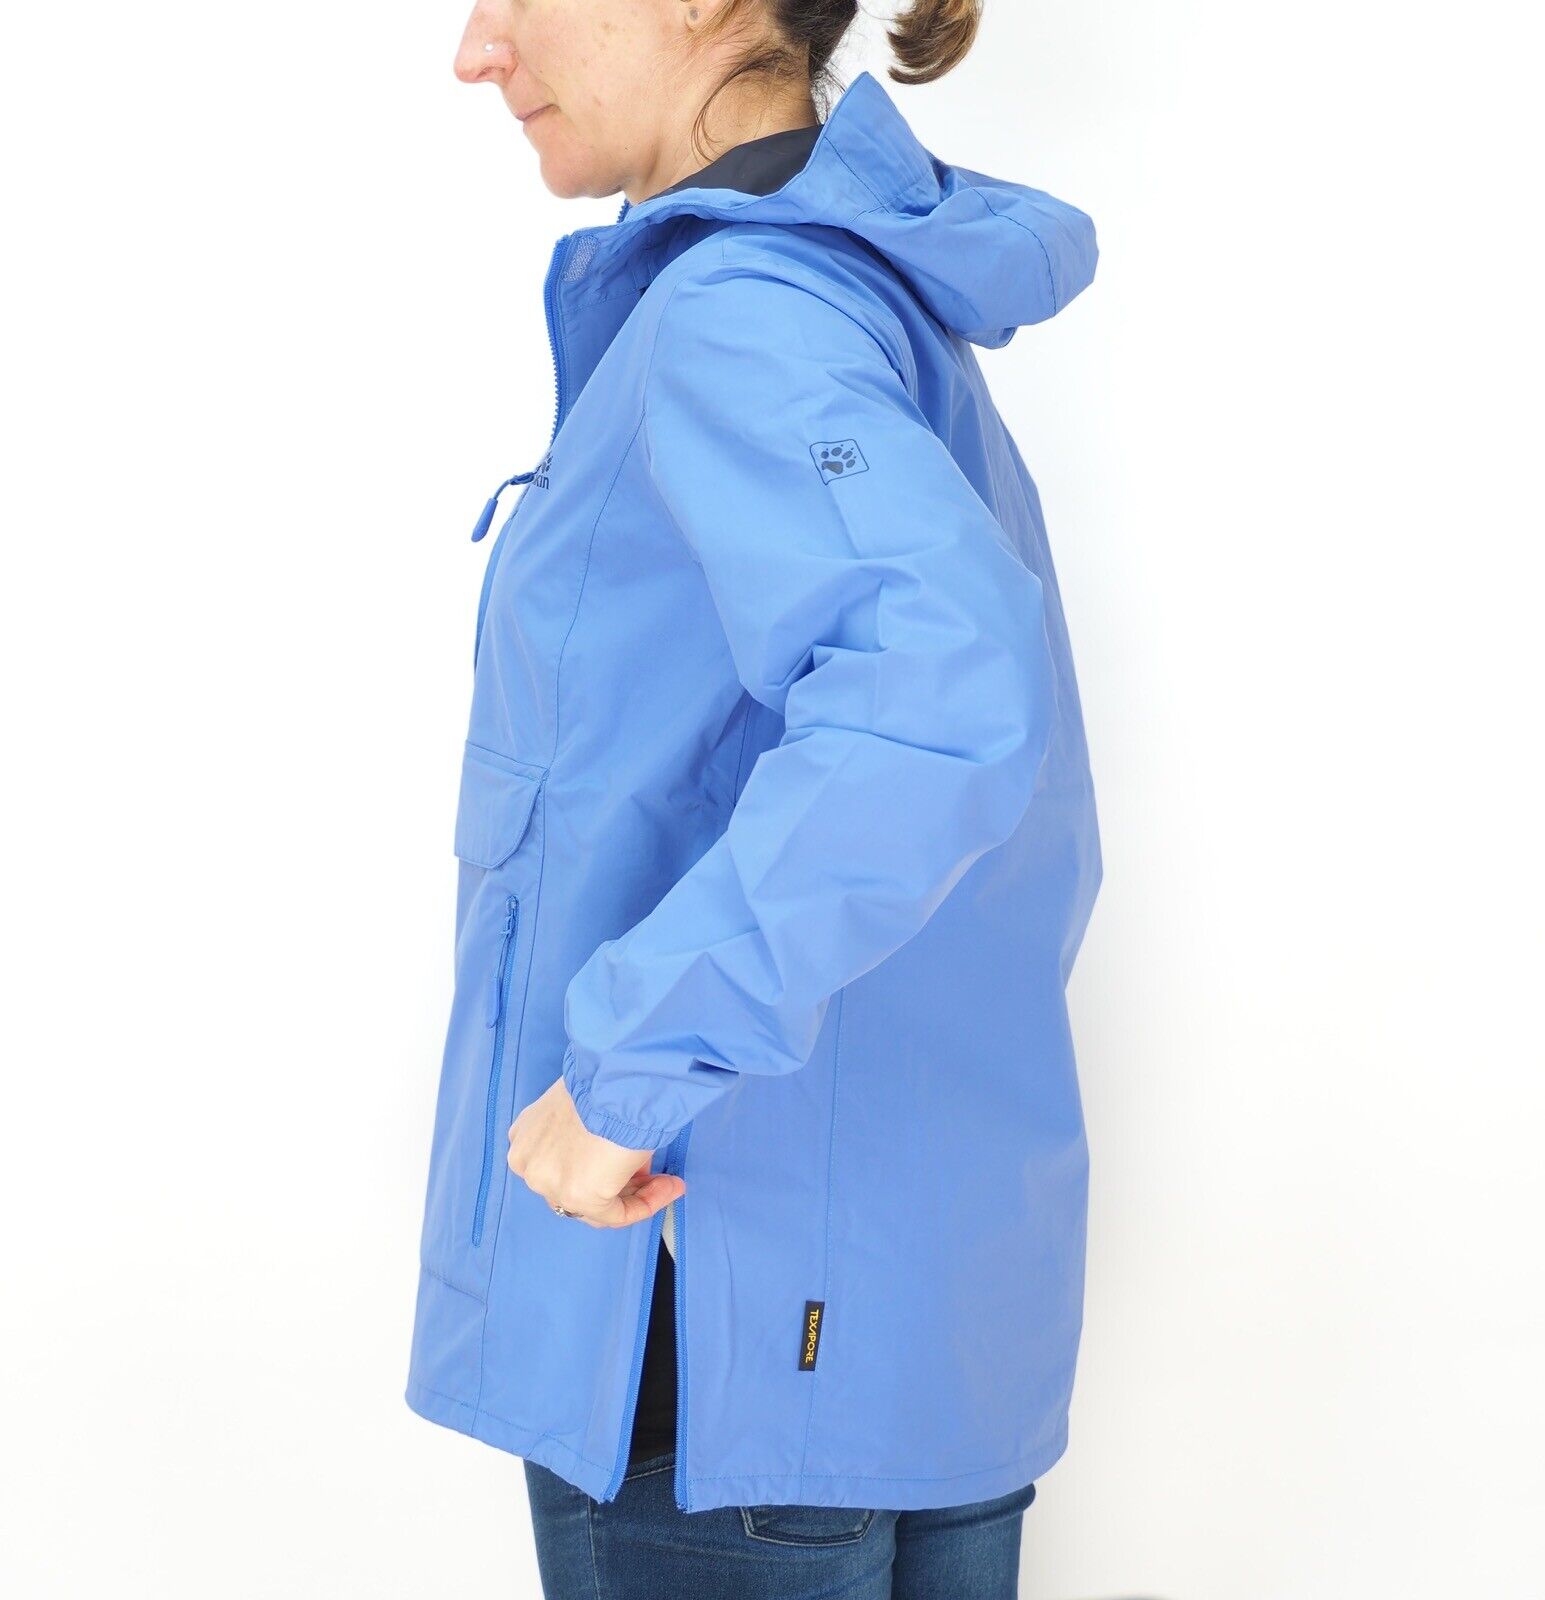 Womens Jack Wolfskin Cloudburst Smock 1108642 Baja Blue Waterproof Hooded Jacket - London Top Style